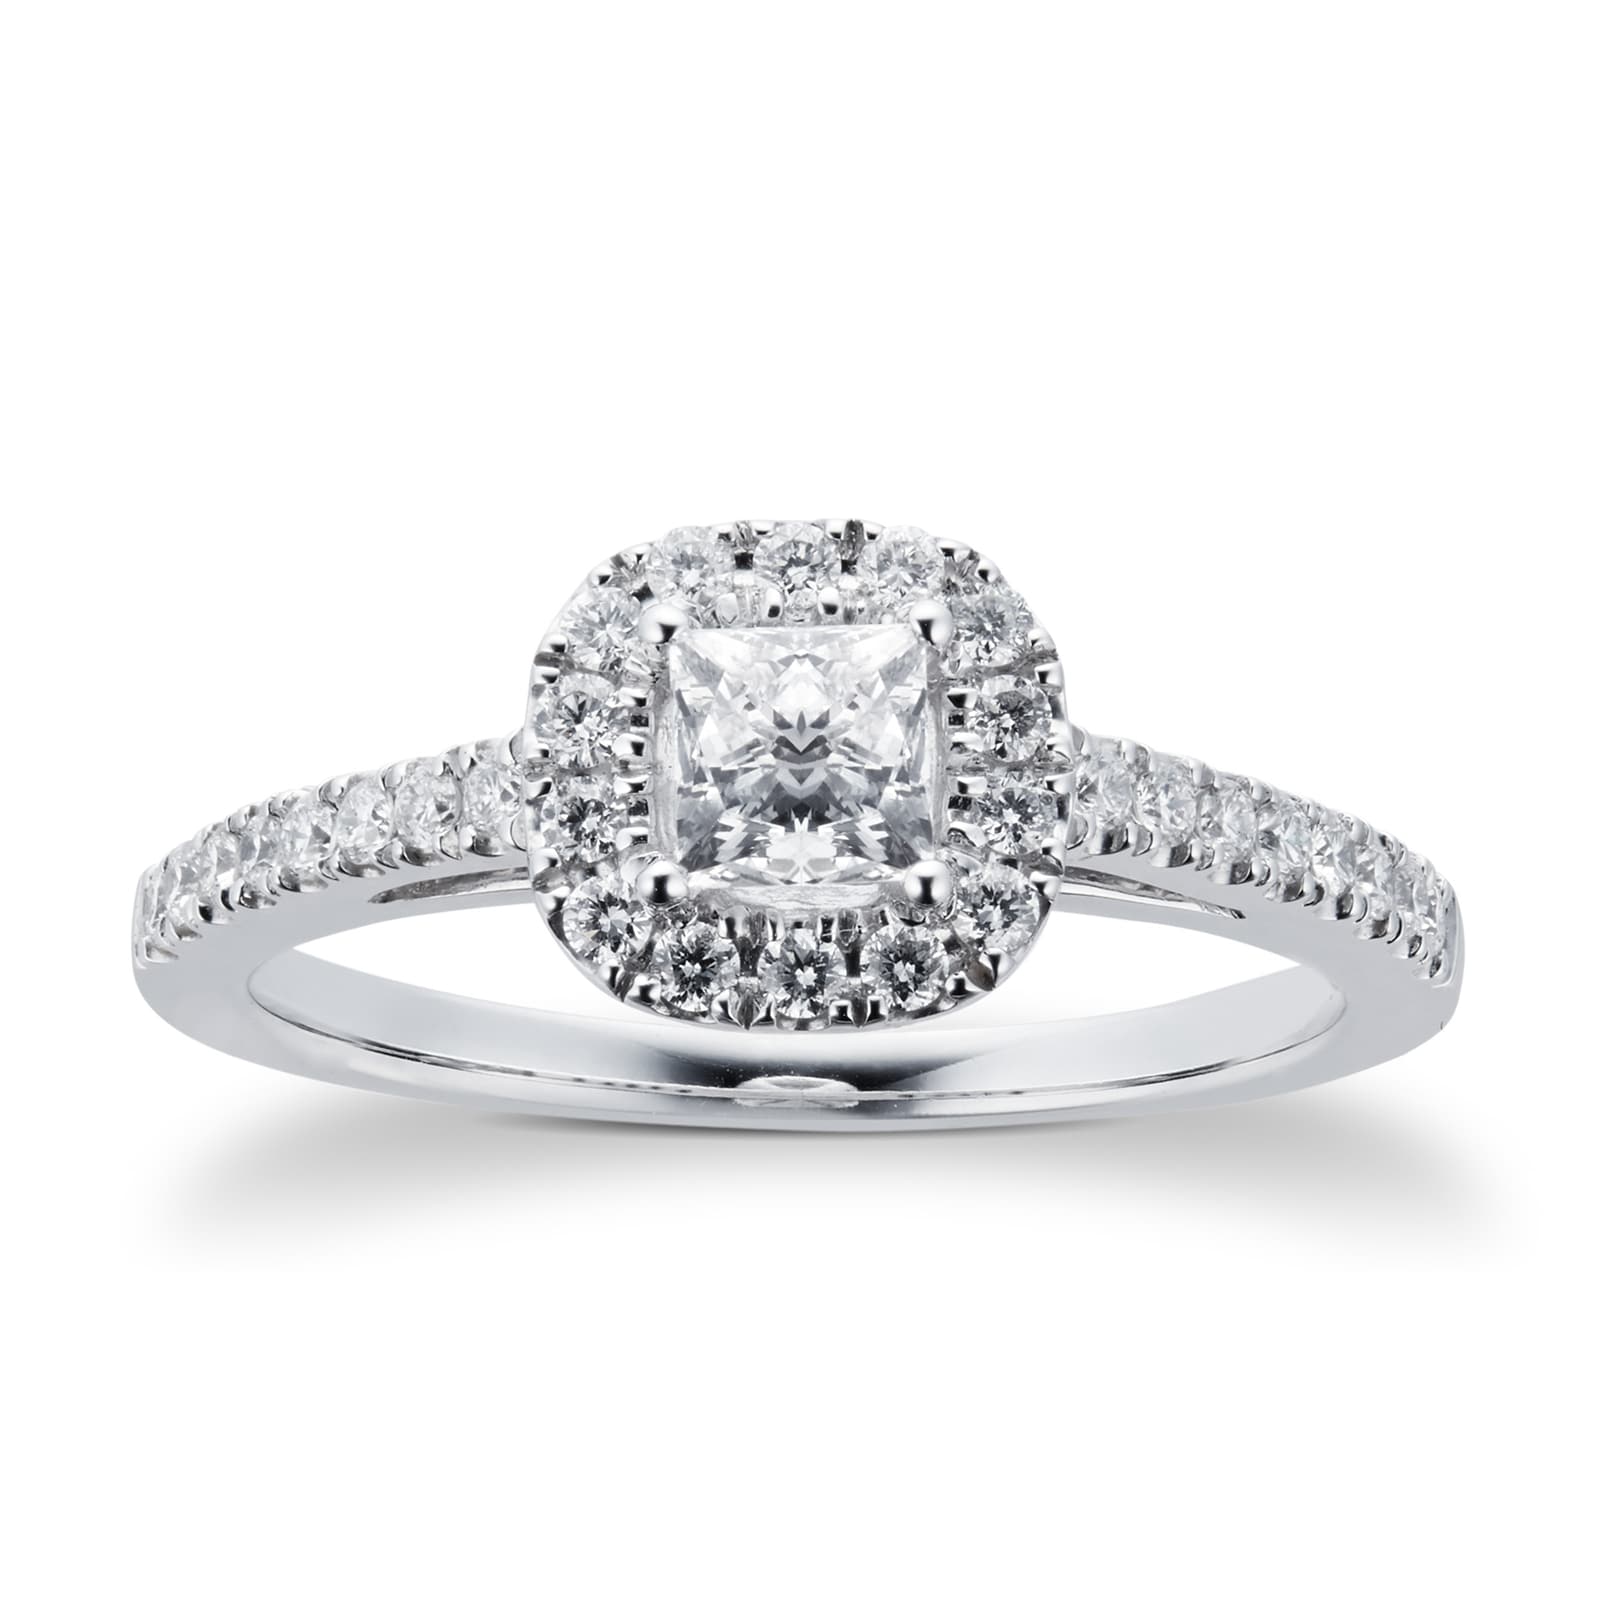 18ct White Gold Princess Cut 065 Carat 88 Facet Diamond Ring Ring Size O